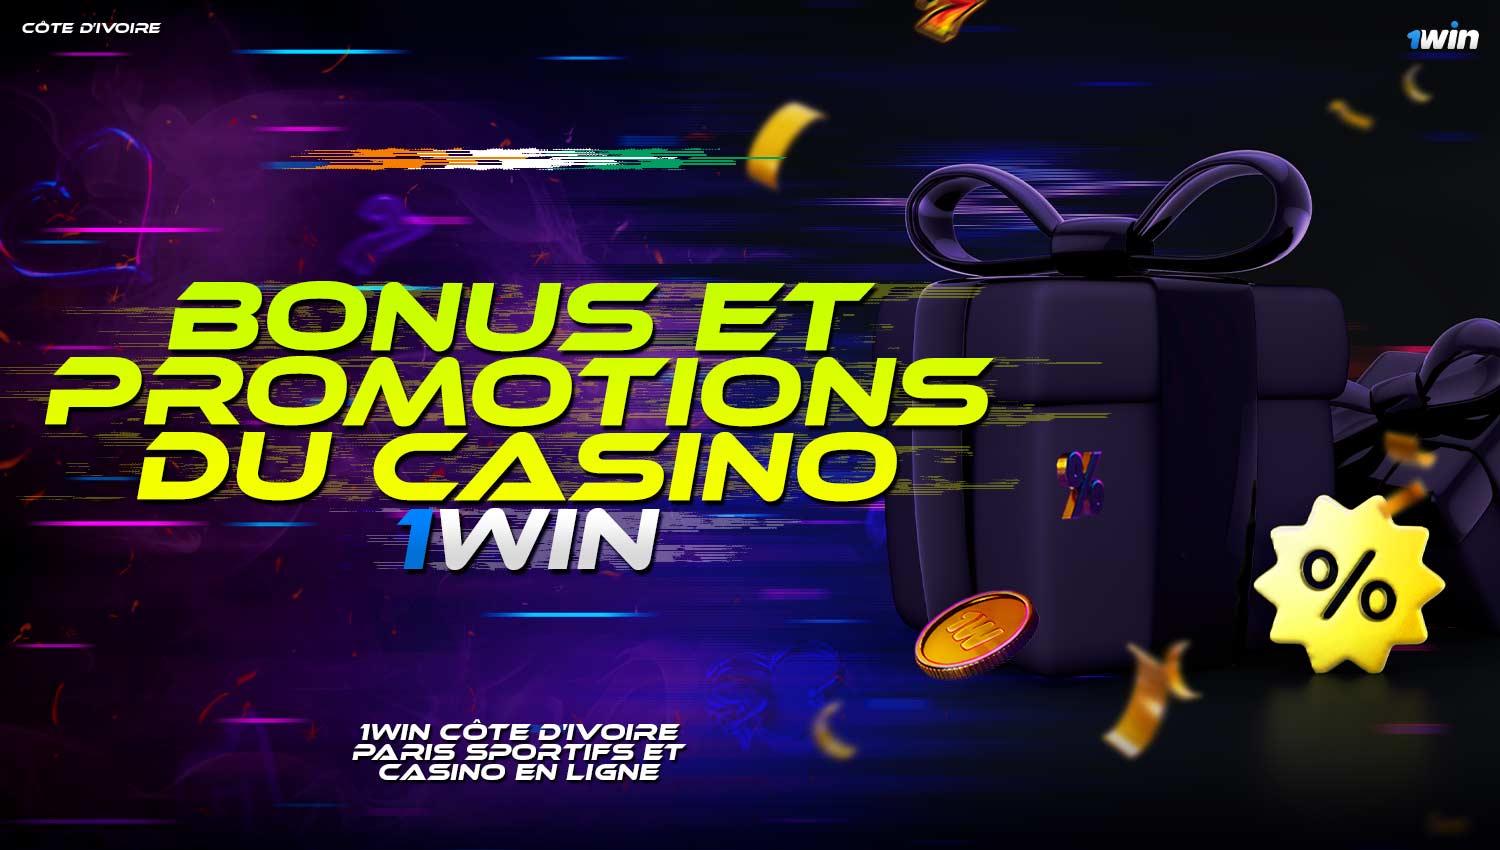 1win propose des bonus avantageux et des promotions de casino pour les joueurs de Côte d'Ivoire.